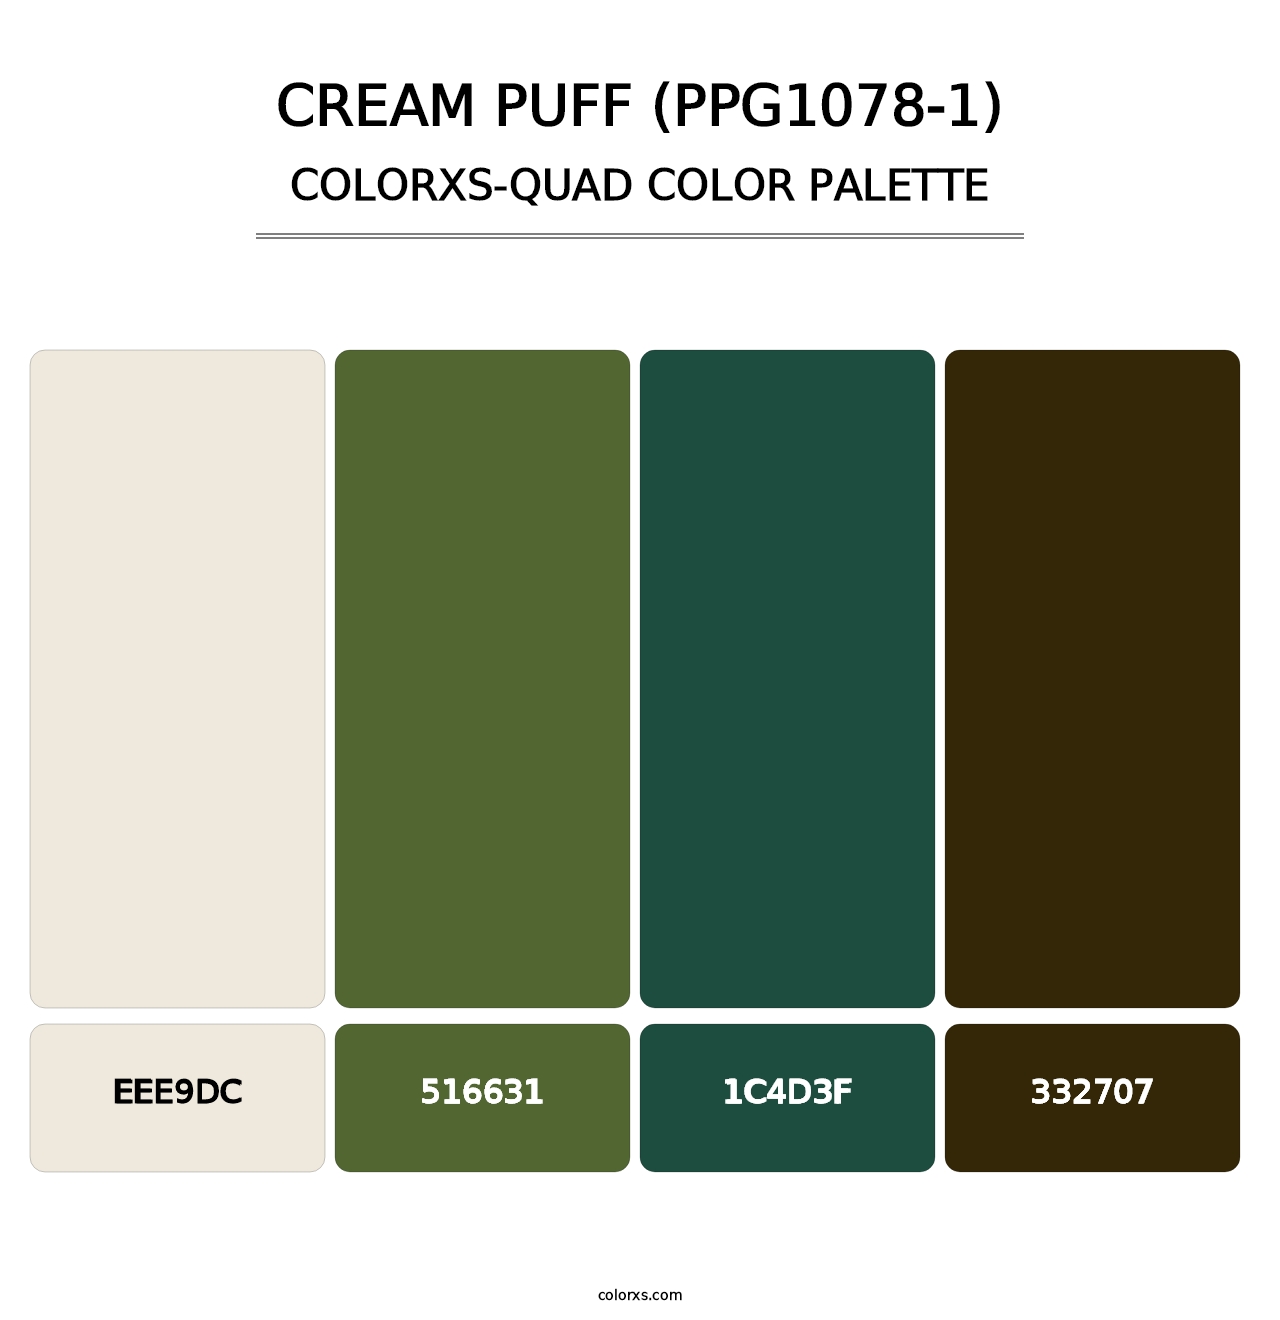 Cream Puff (PPG1078-1) - Colorxs Quad Palette